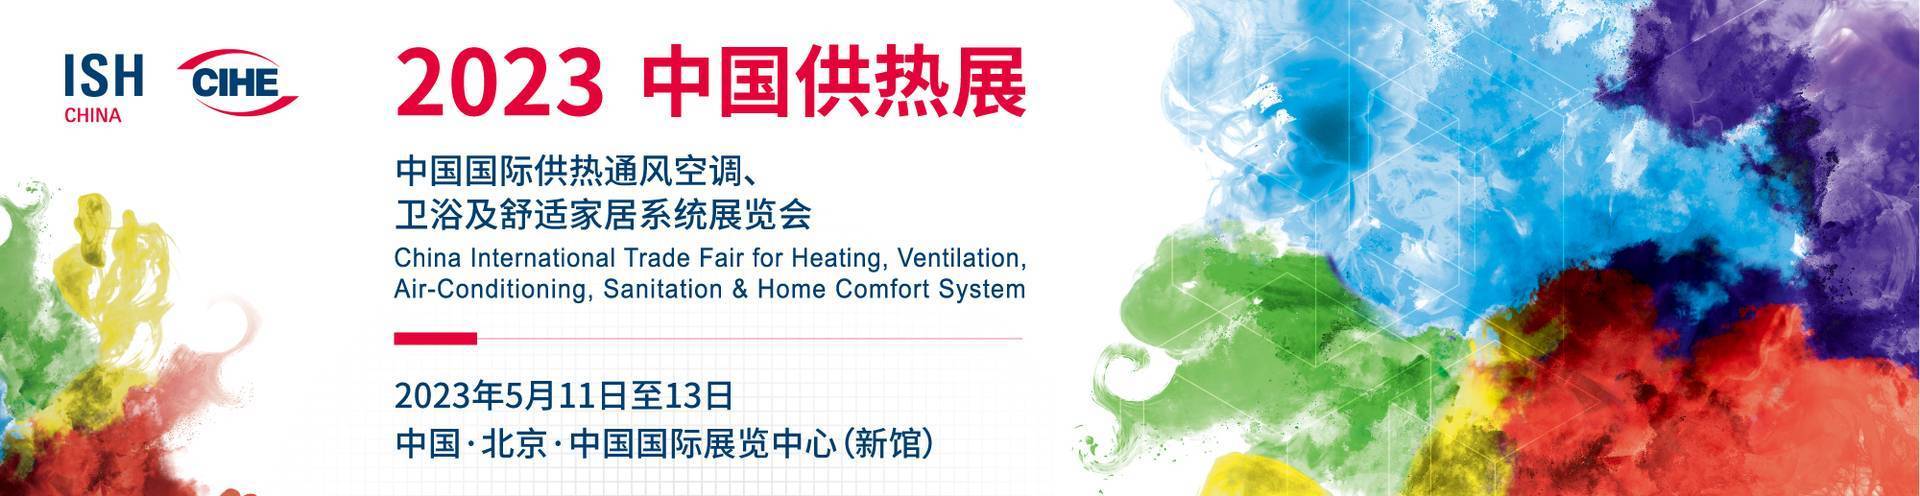 2023北京熱泵展ISH中國供熱展覽會